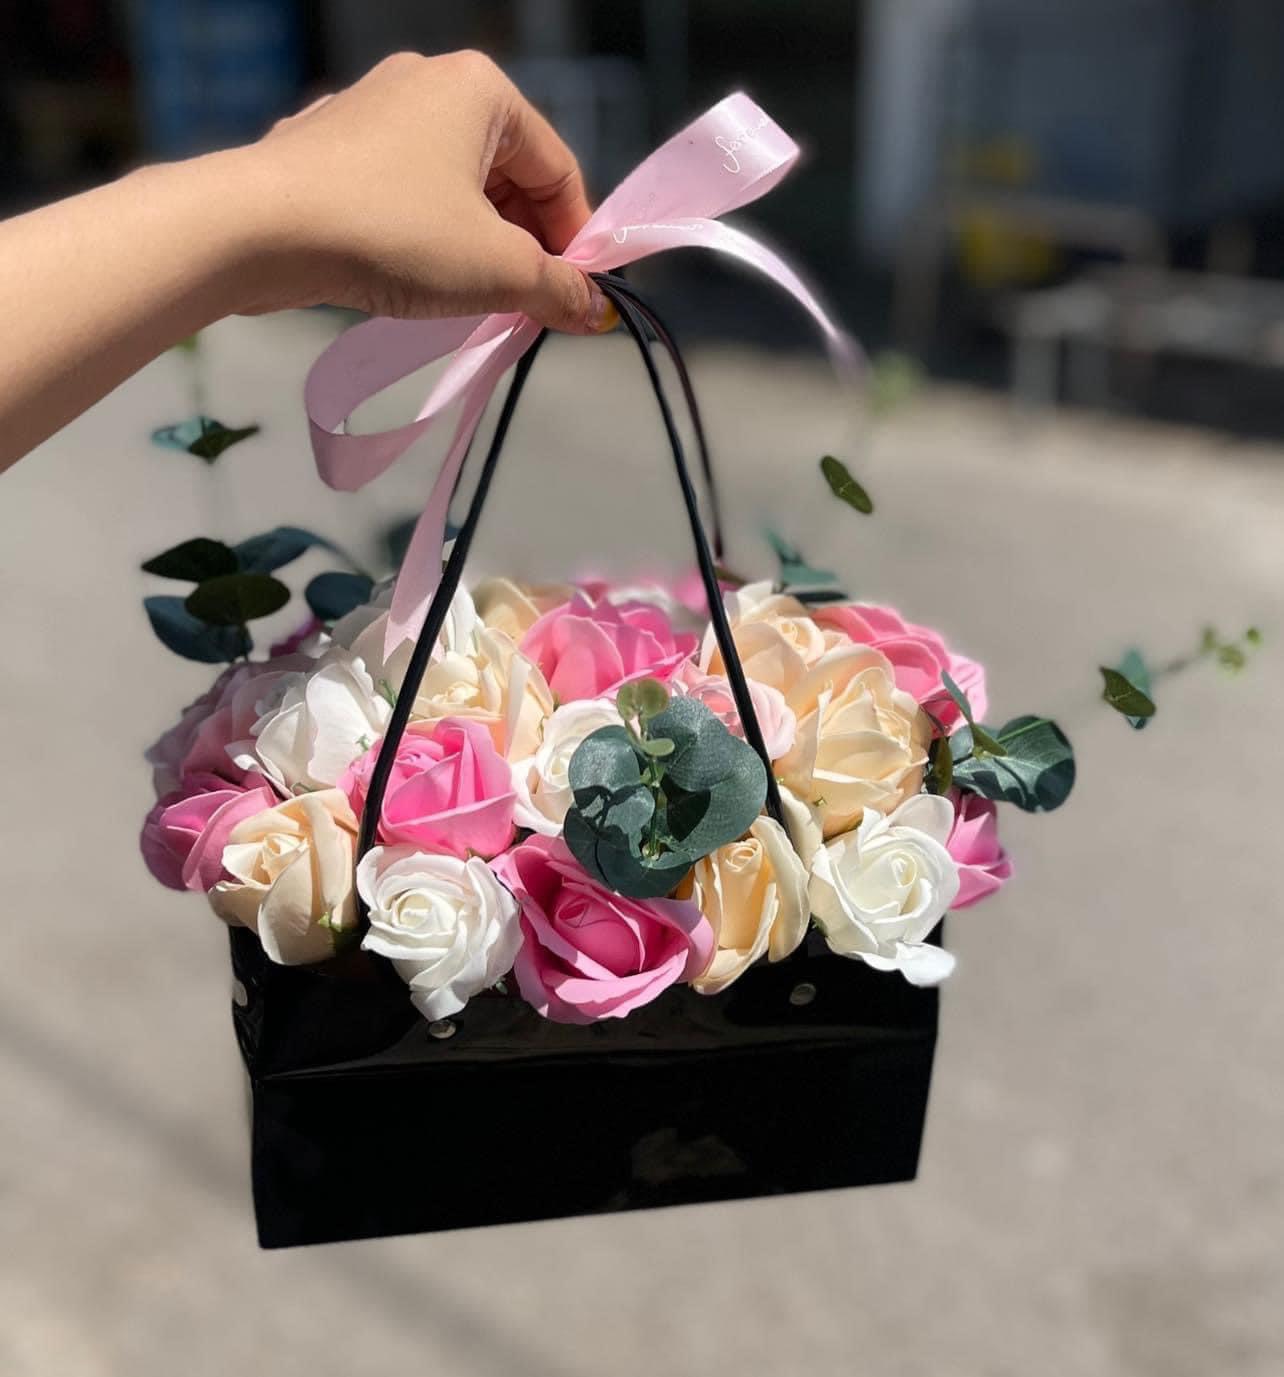 Thị trường hoa handmade đang rất phát triển và trở thành một xu hướng mới trong làng nghệ thuật của Việt Nam. Hãy xem hình ảnh liên quan để nhìn thấy sự đa dạng và phong phú của các loại hoa handmade đến từ các nghệ nhân tài năng.